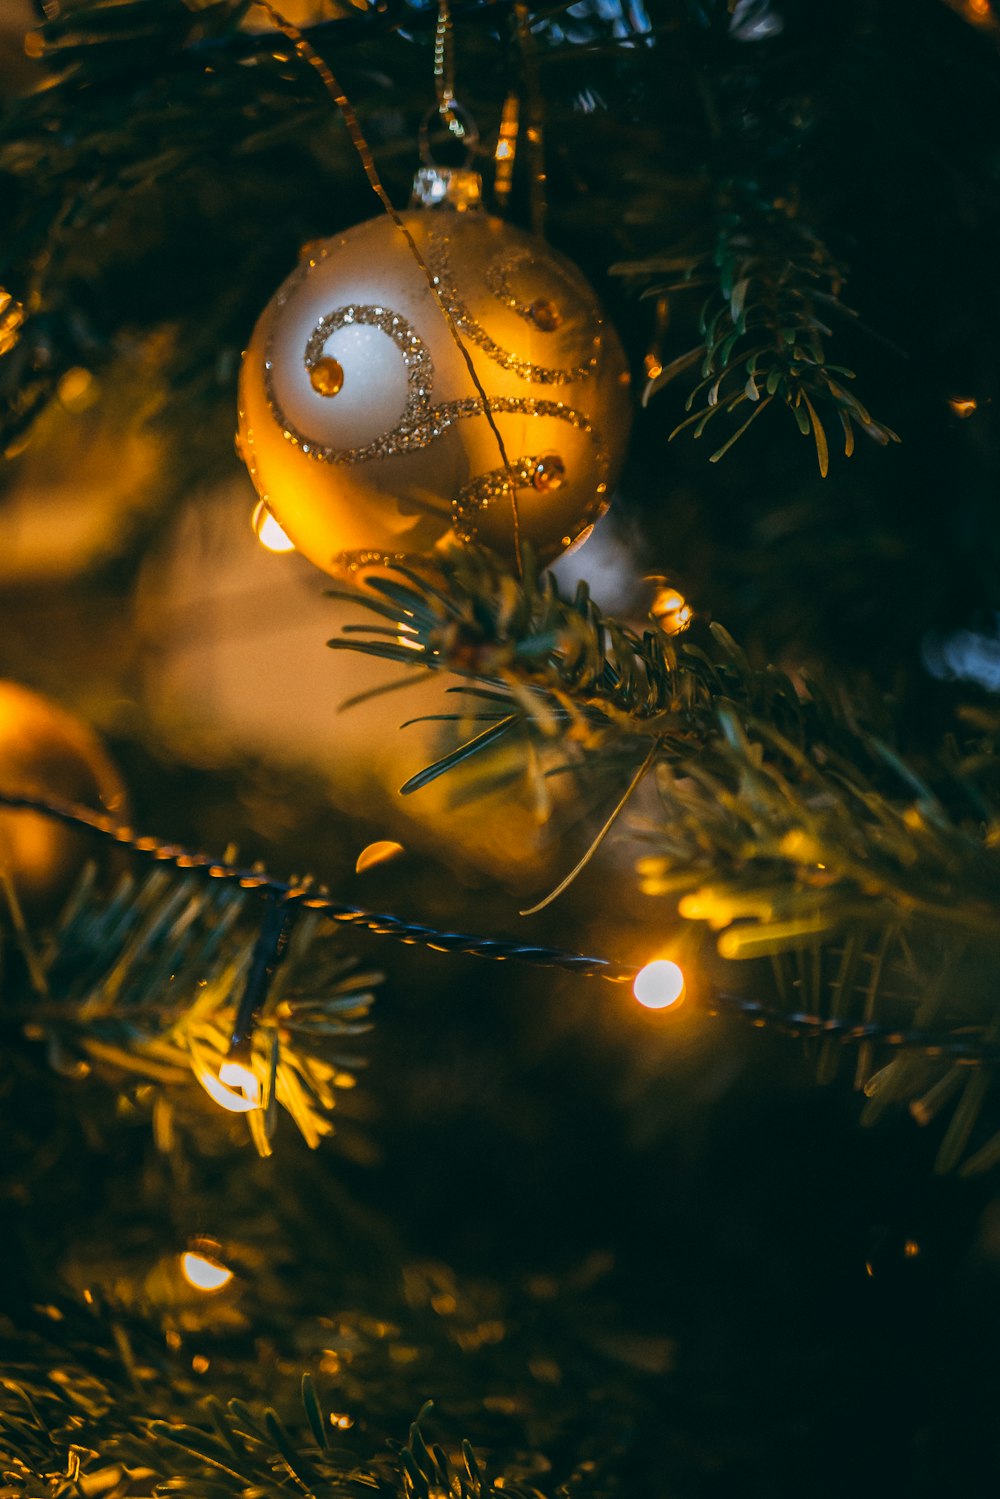 turned-on string light on Christmas tree